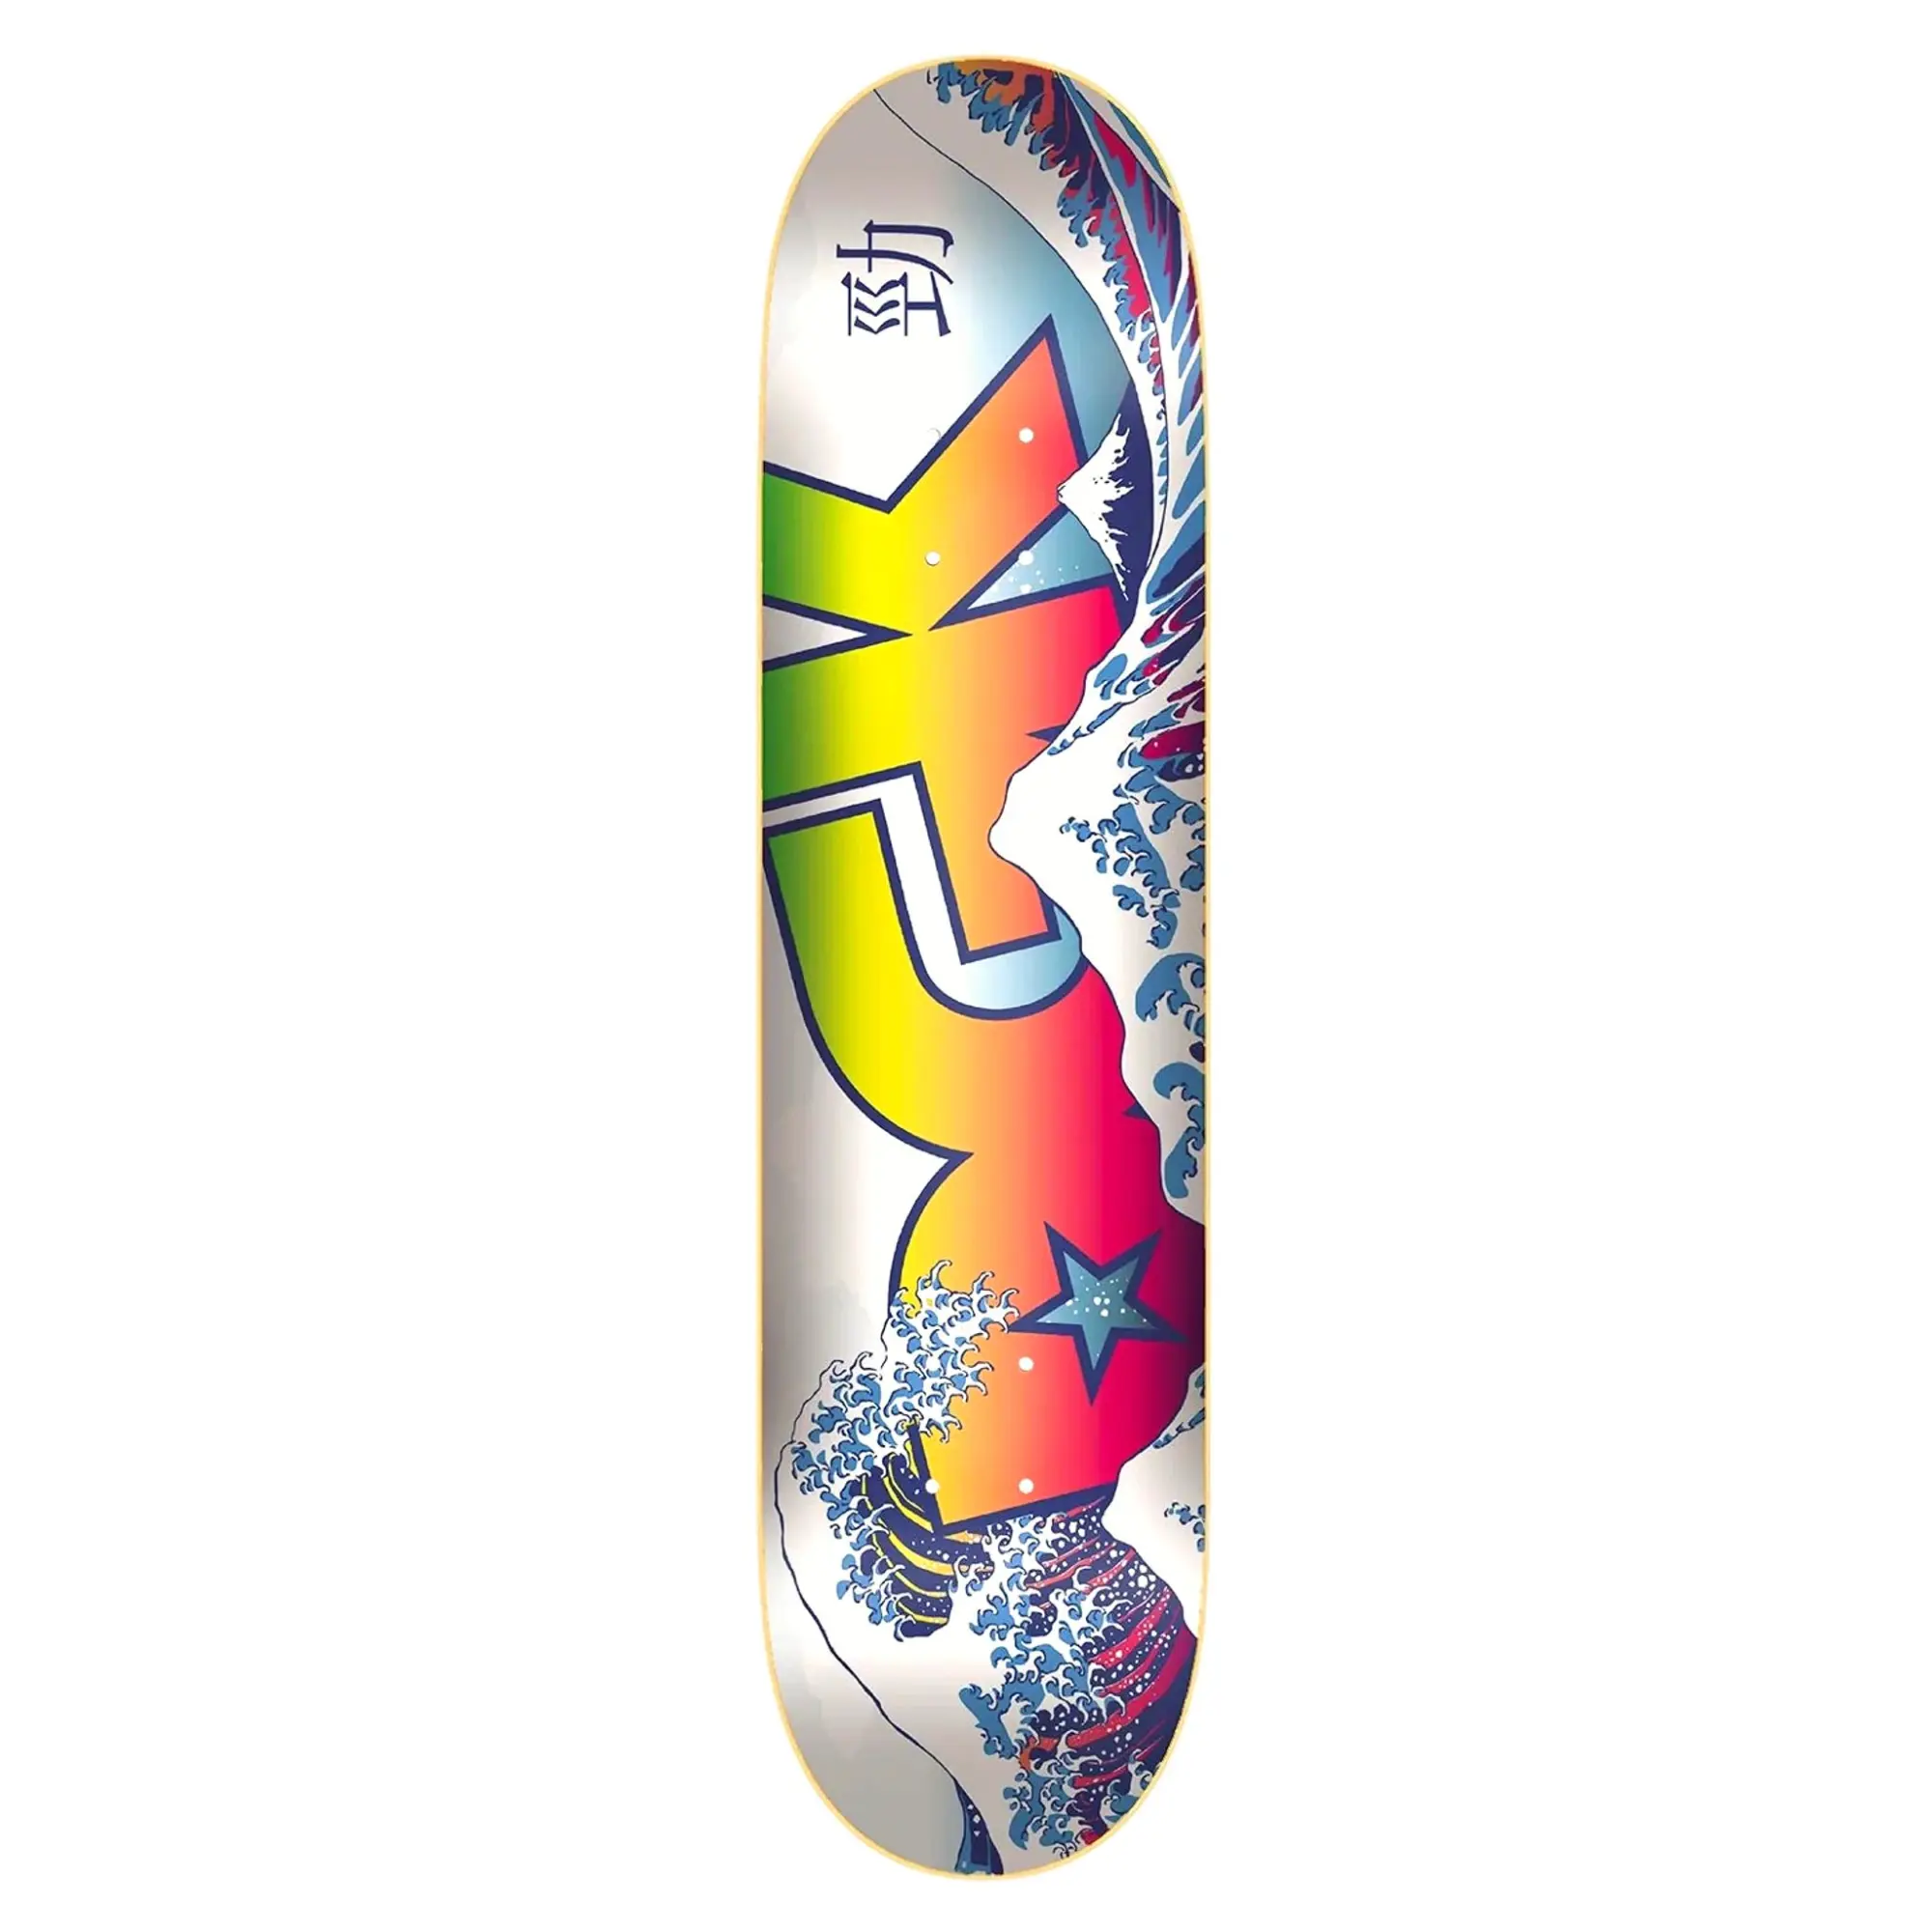 Dgk Tavola Skateboard Tsunami 8.1